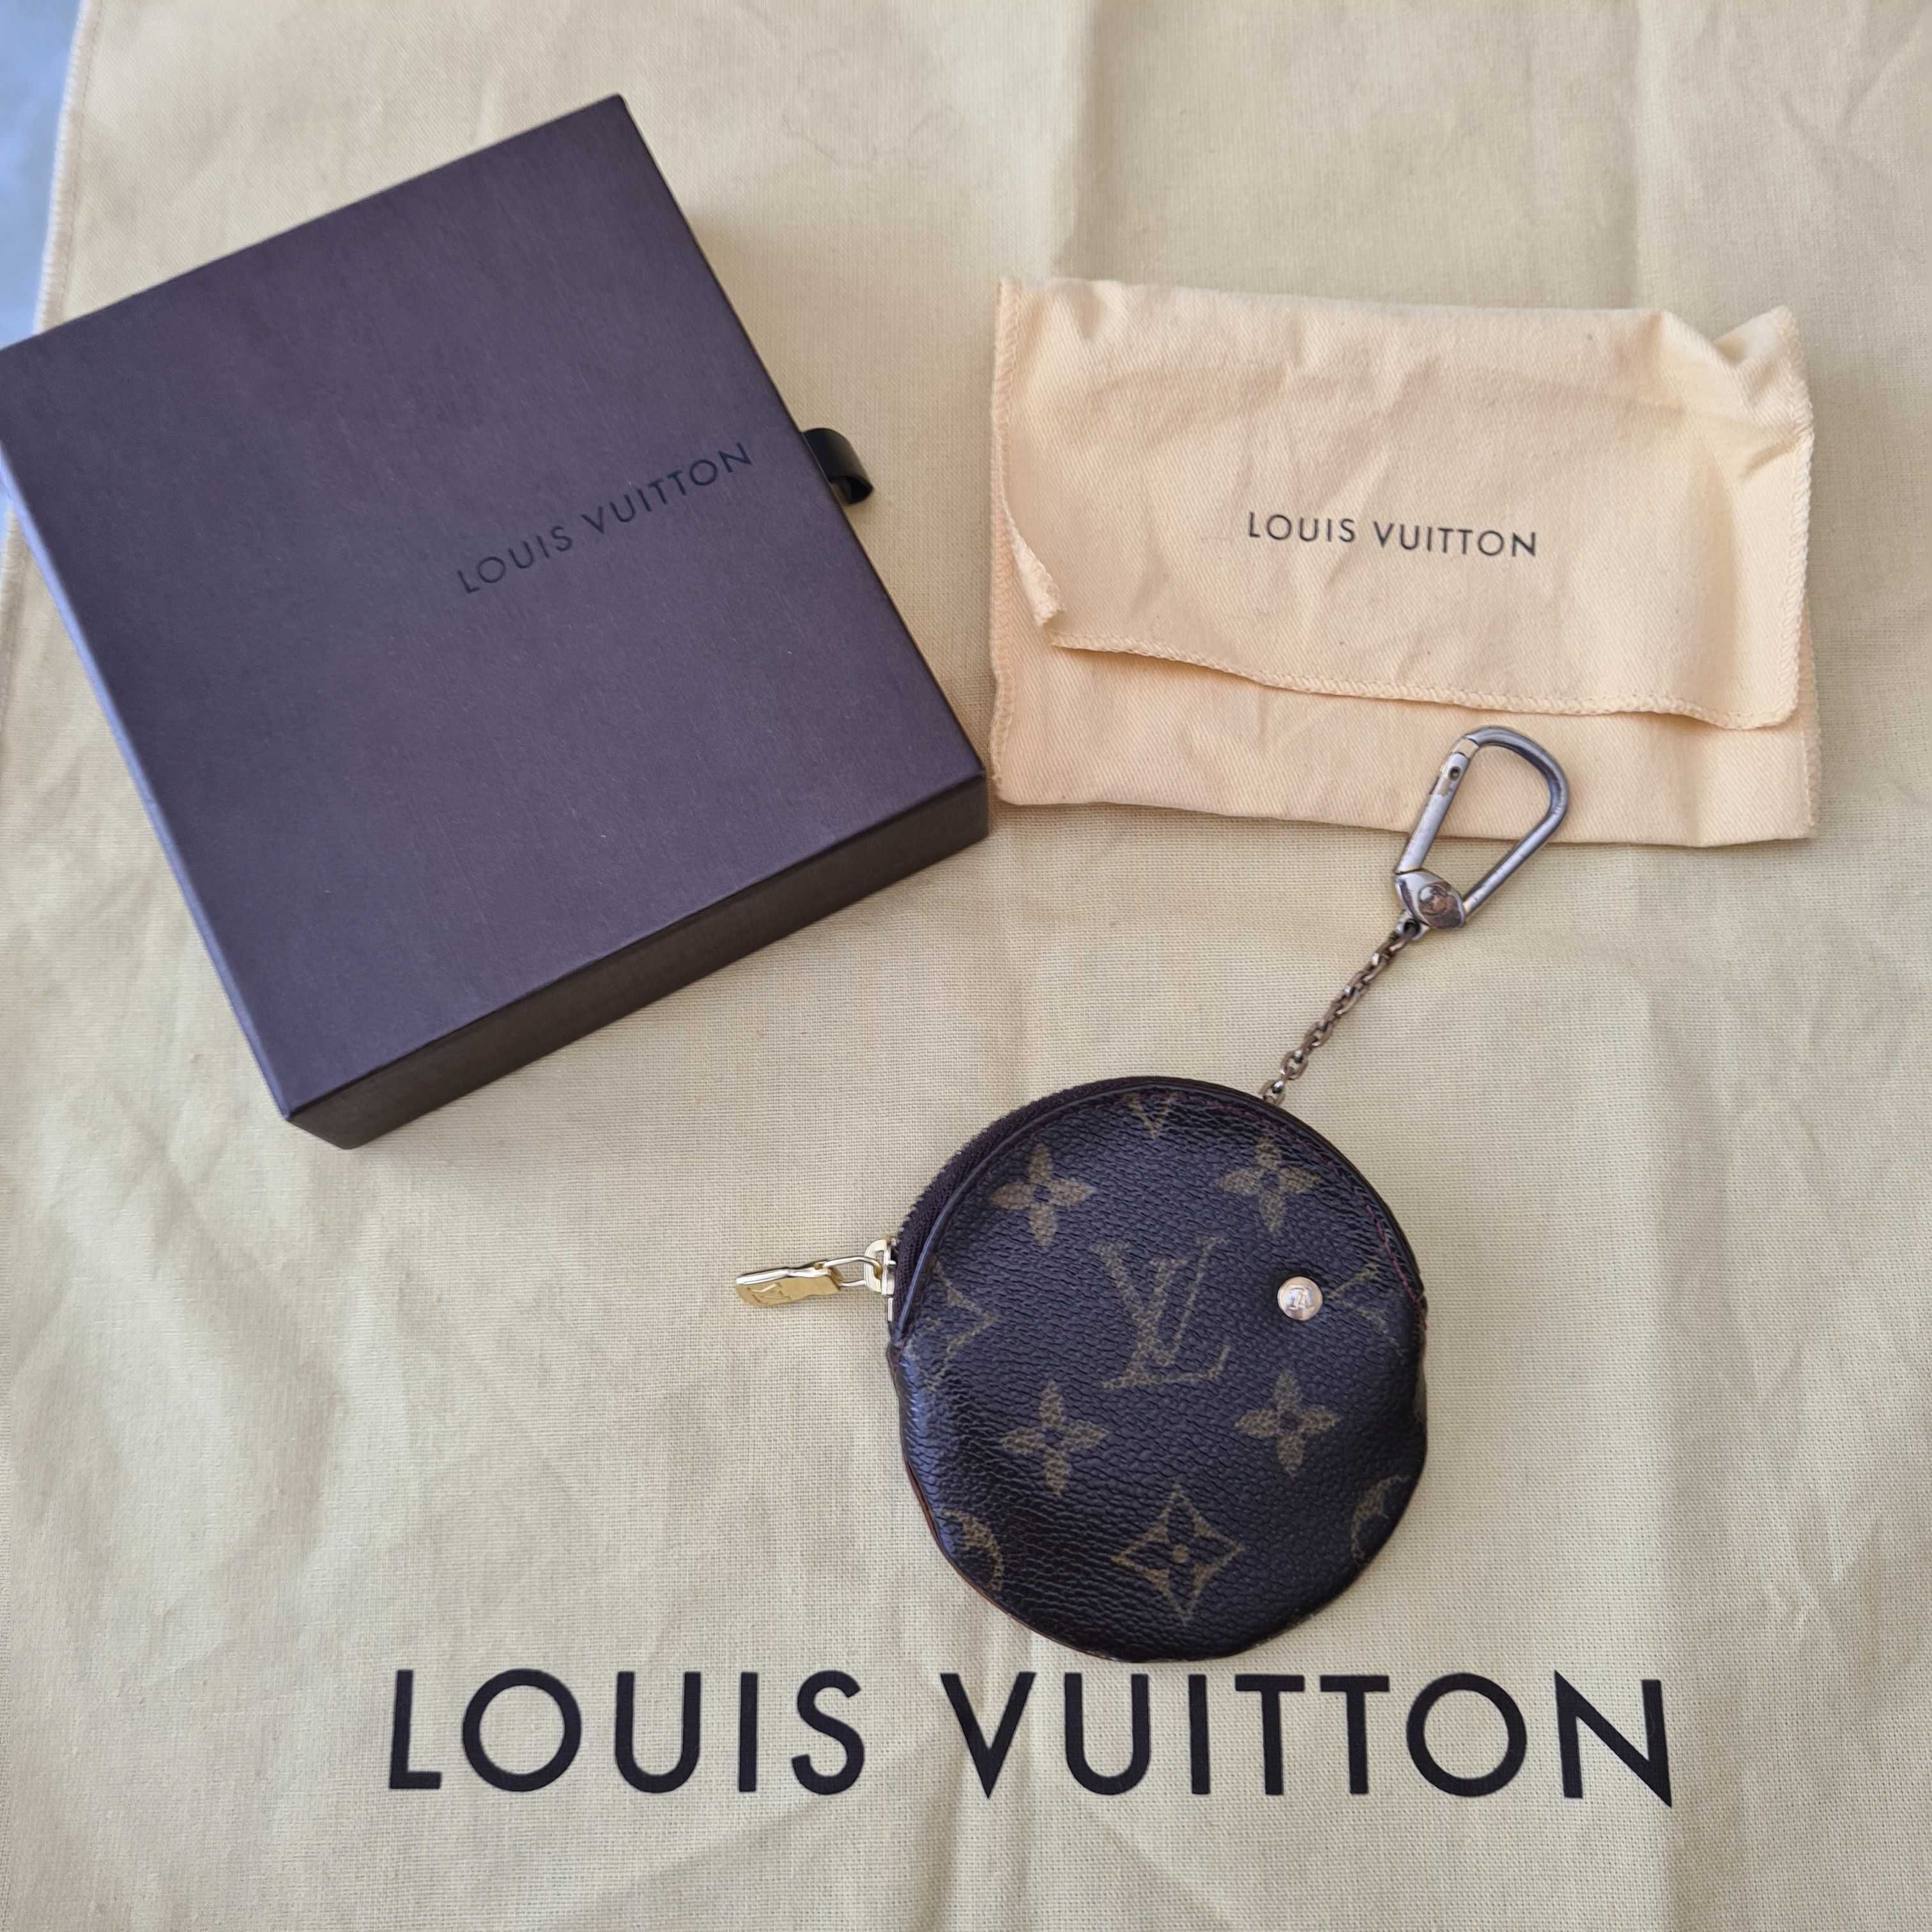 Vintage portmonetka z monogramem Louis Vuitton z limit edycji